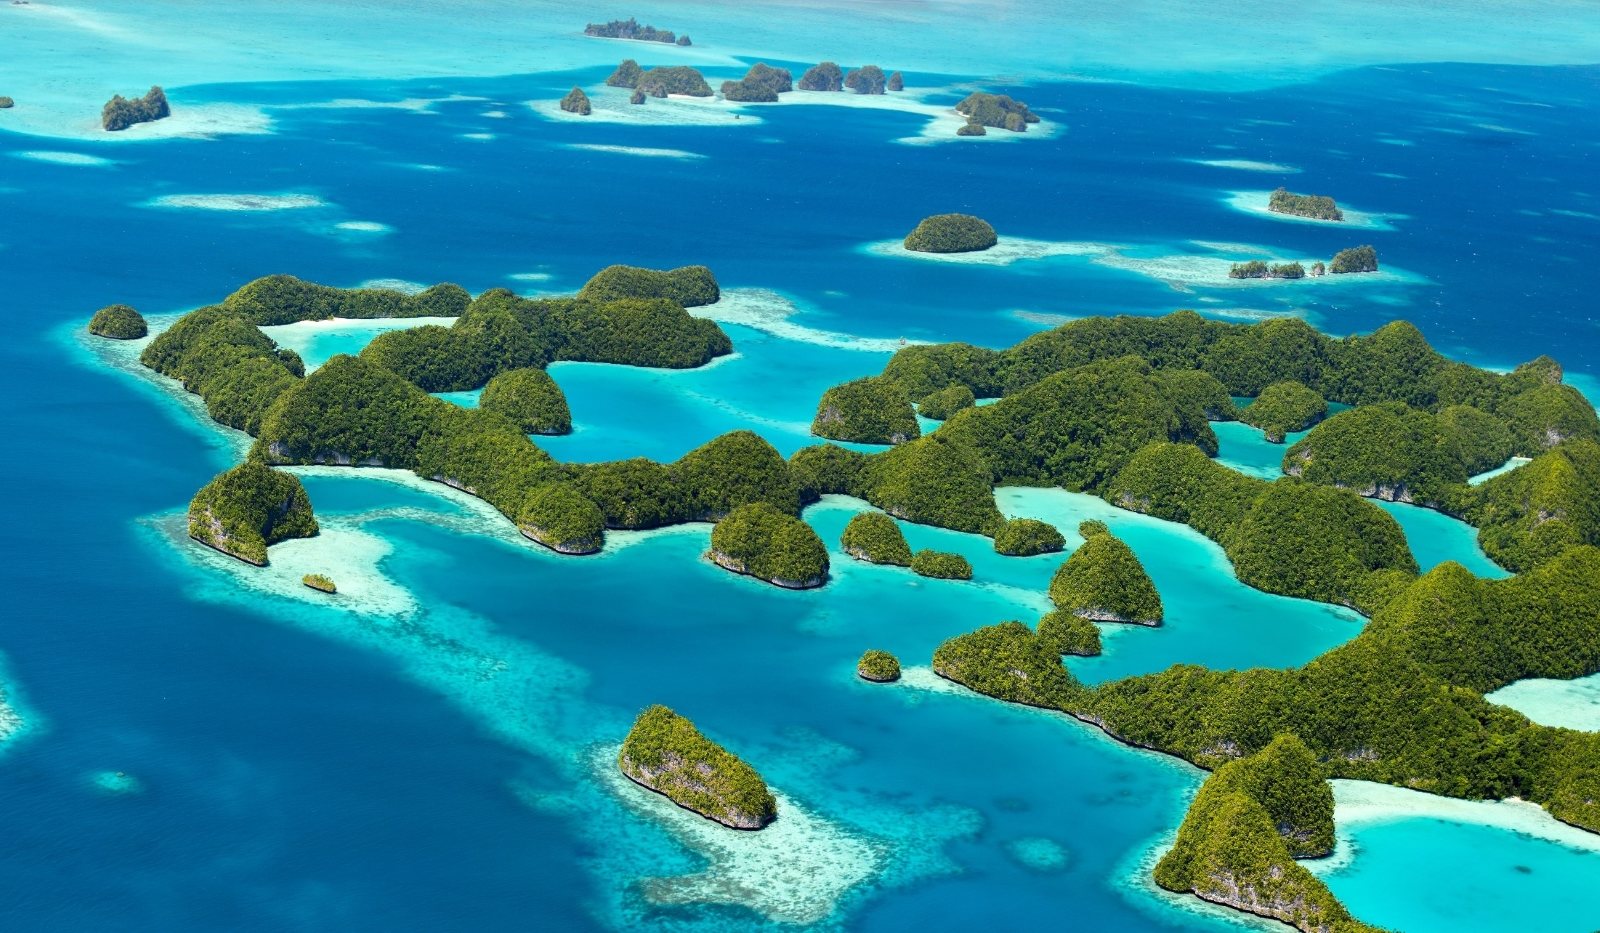 Тихий океан острова архипелаги. Федеративные штаты Микронезии. Коморские острова (архипелаг). Остров Палау Микронезия. Архипелажные воды.